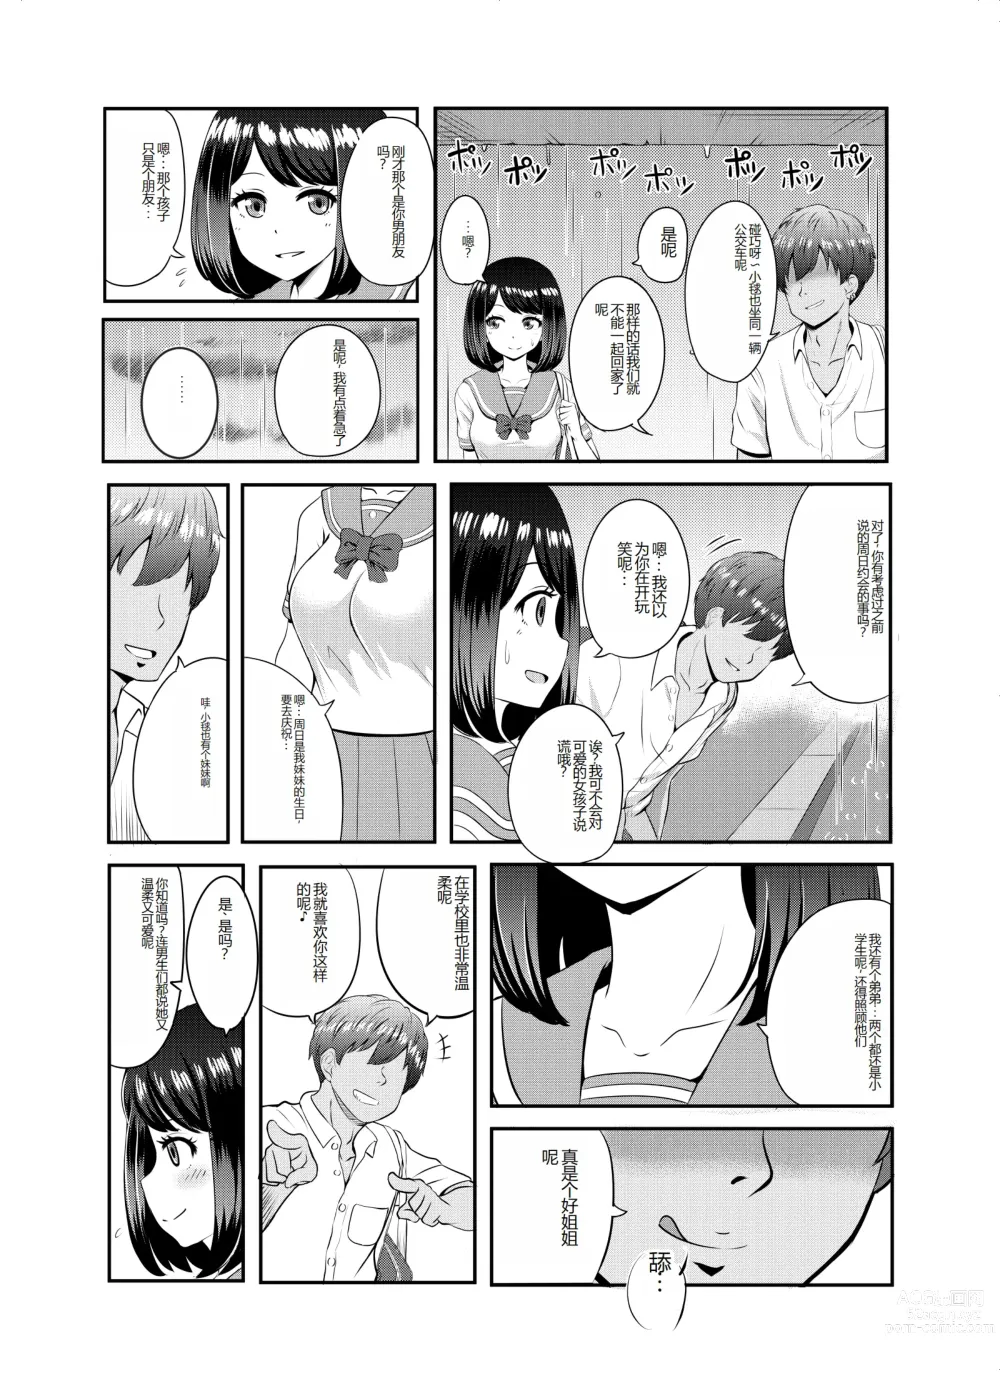 Page 14 of doujinshi 2-nen 3-kumi